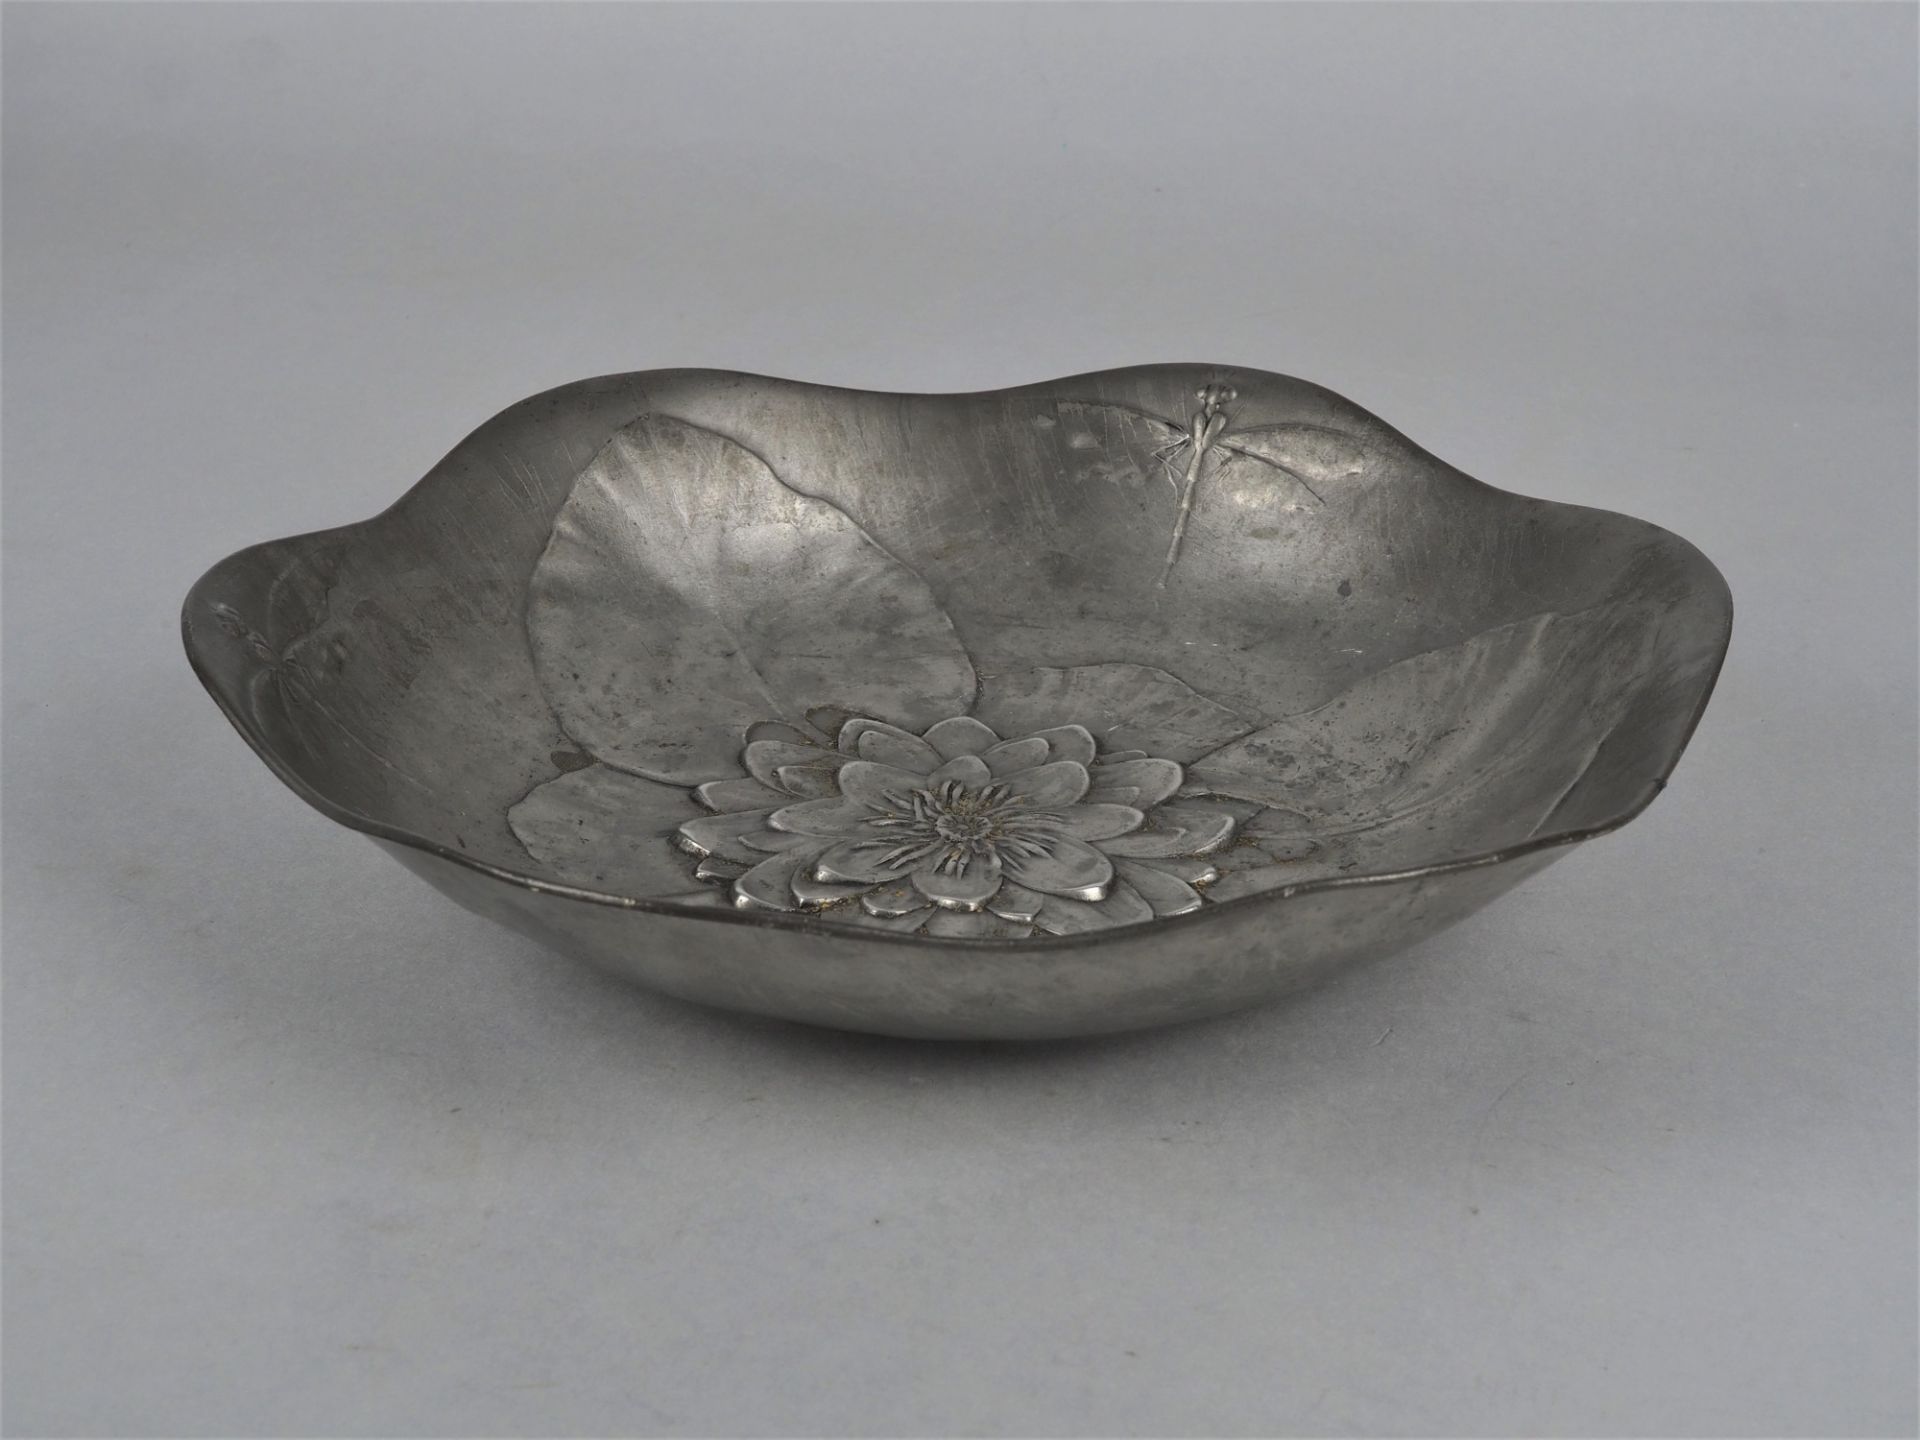 Art Nouveau bowl, Kayser pewter - Image 2 of 3